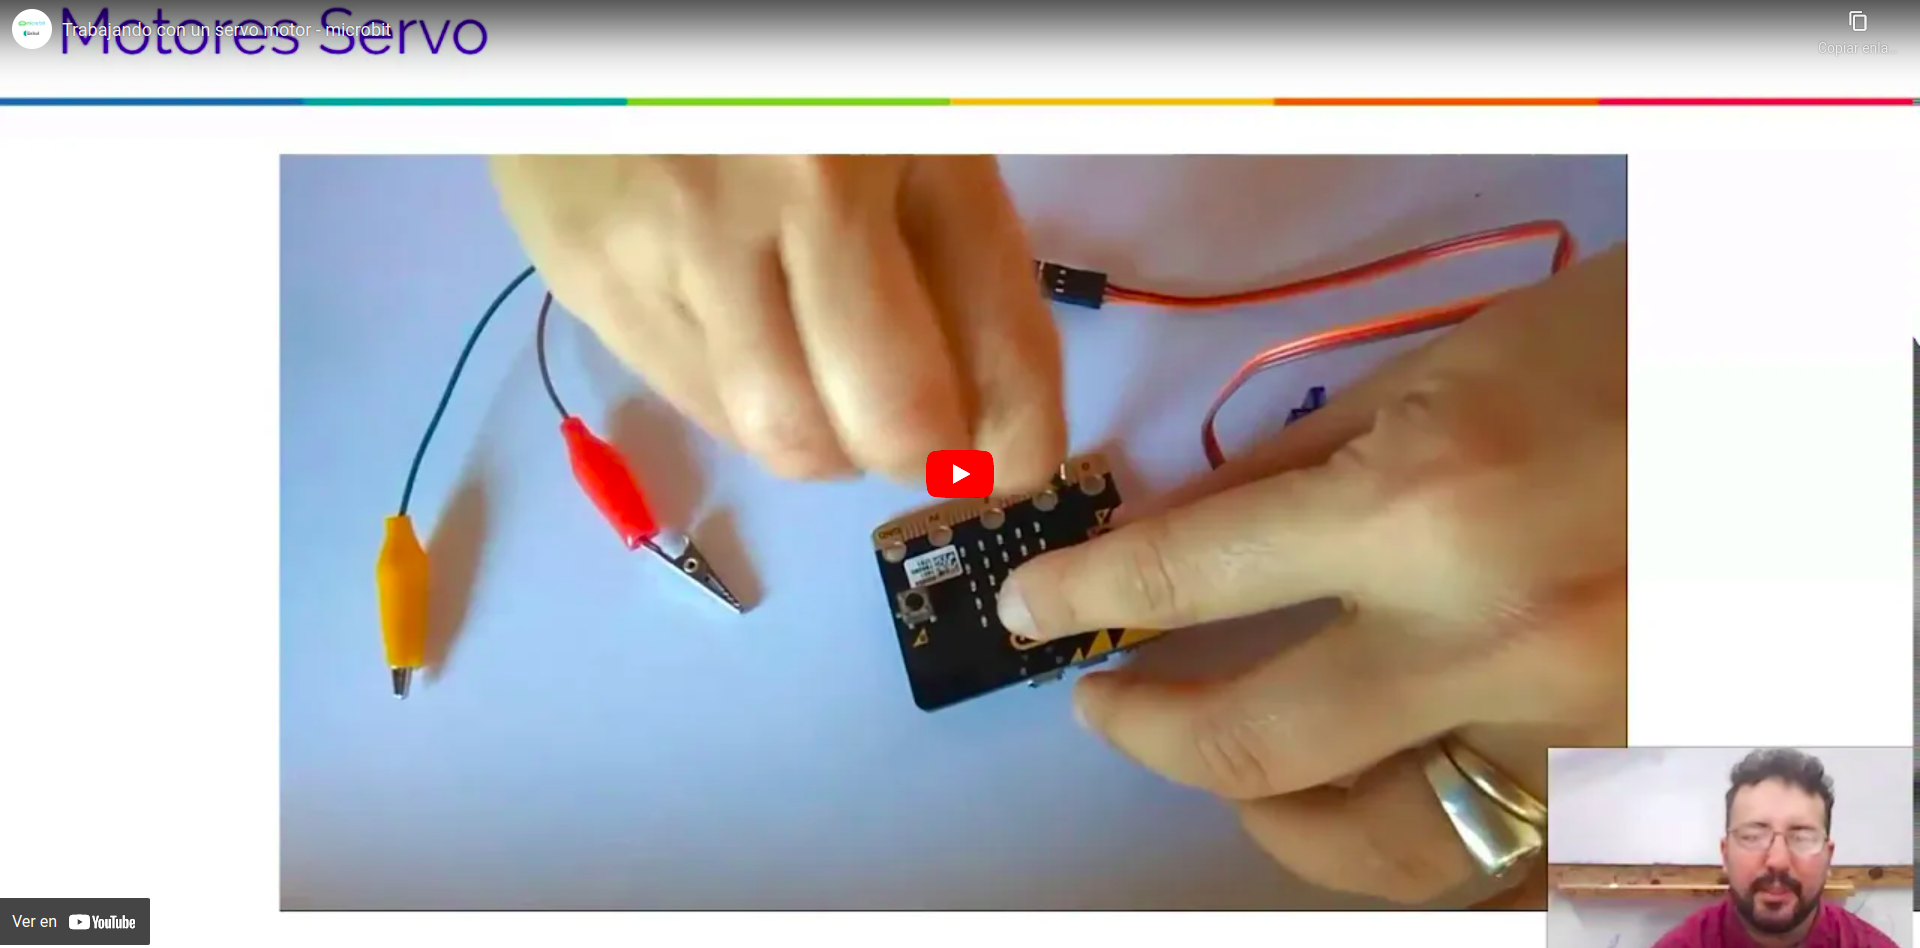 Vídeo que describe el funcionamiento de un servo conectado a una placa micro:bit